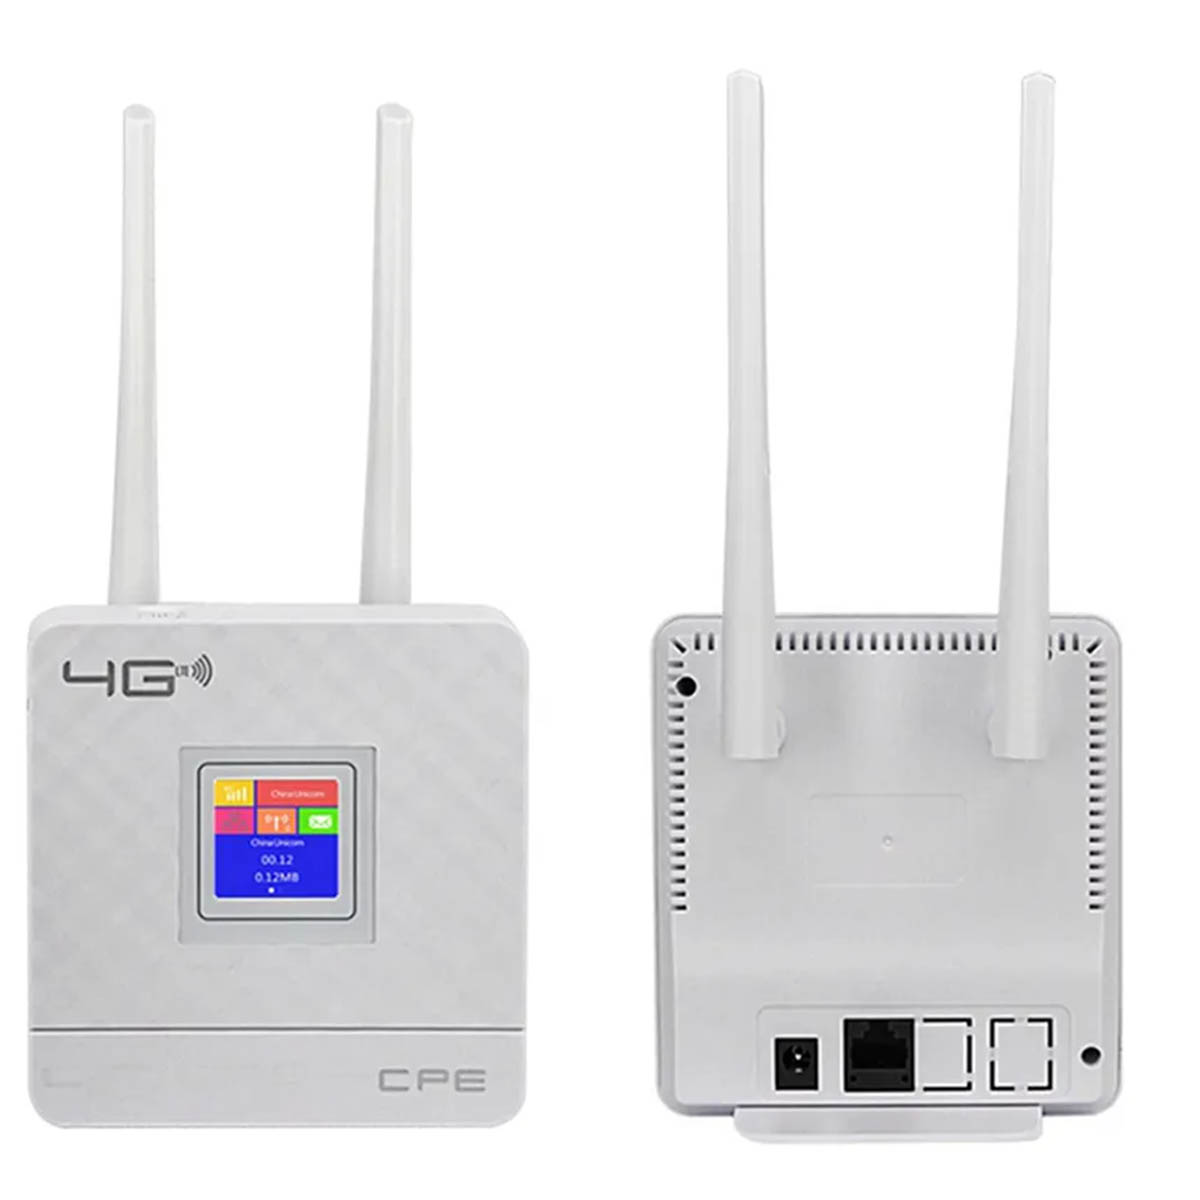 4G модем, Wi-Fi роутер, маршрутизатор CPF 903, с дисплеем, цвет белый